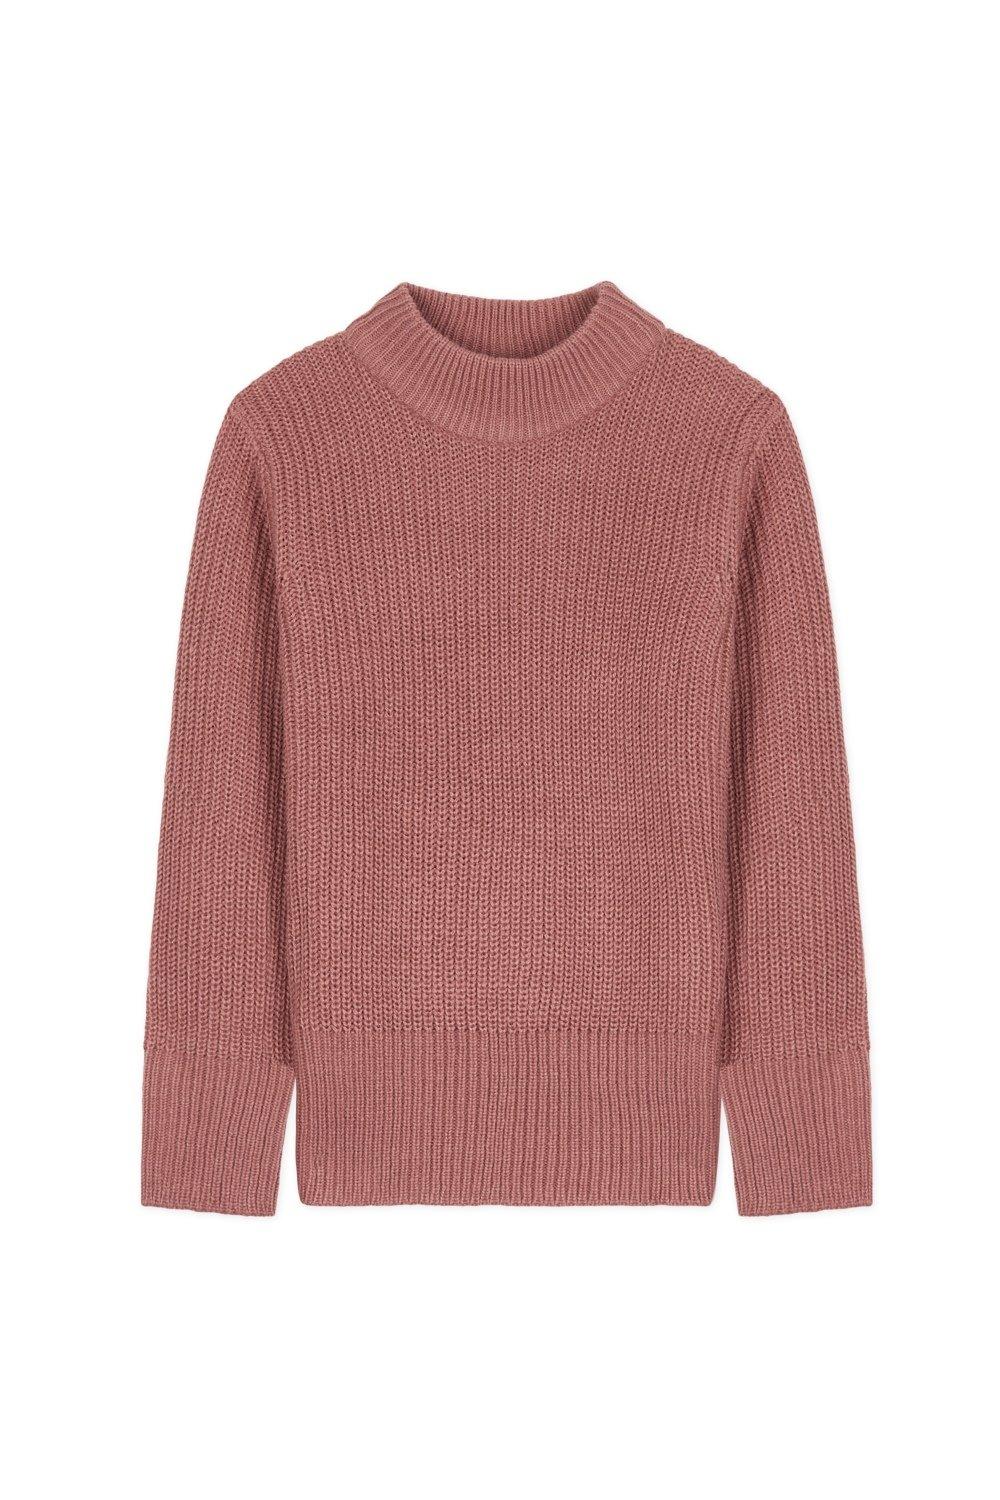 Пуловер с круглым вырезом CityComfort, розовый футболки и топы cubby джемпер поло для мальчика positive waves